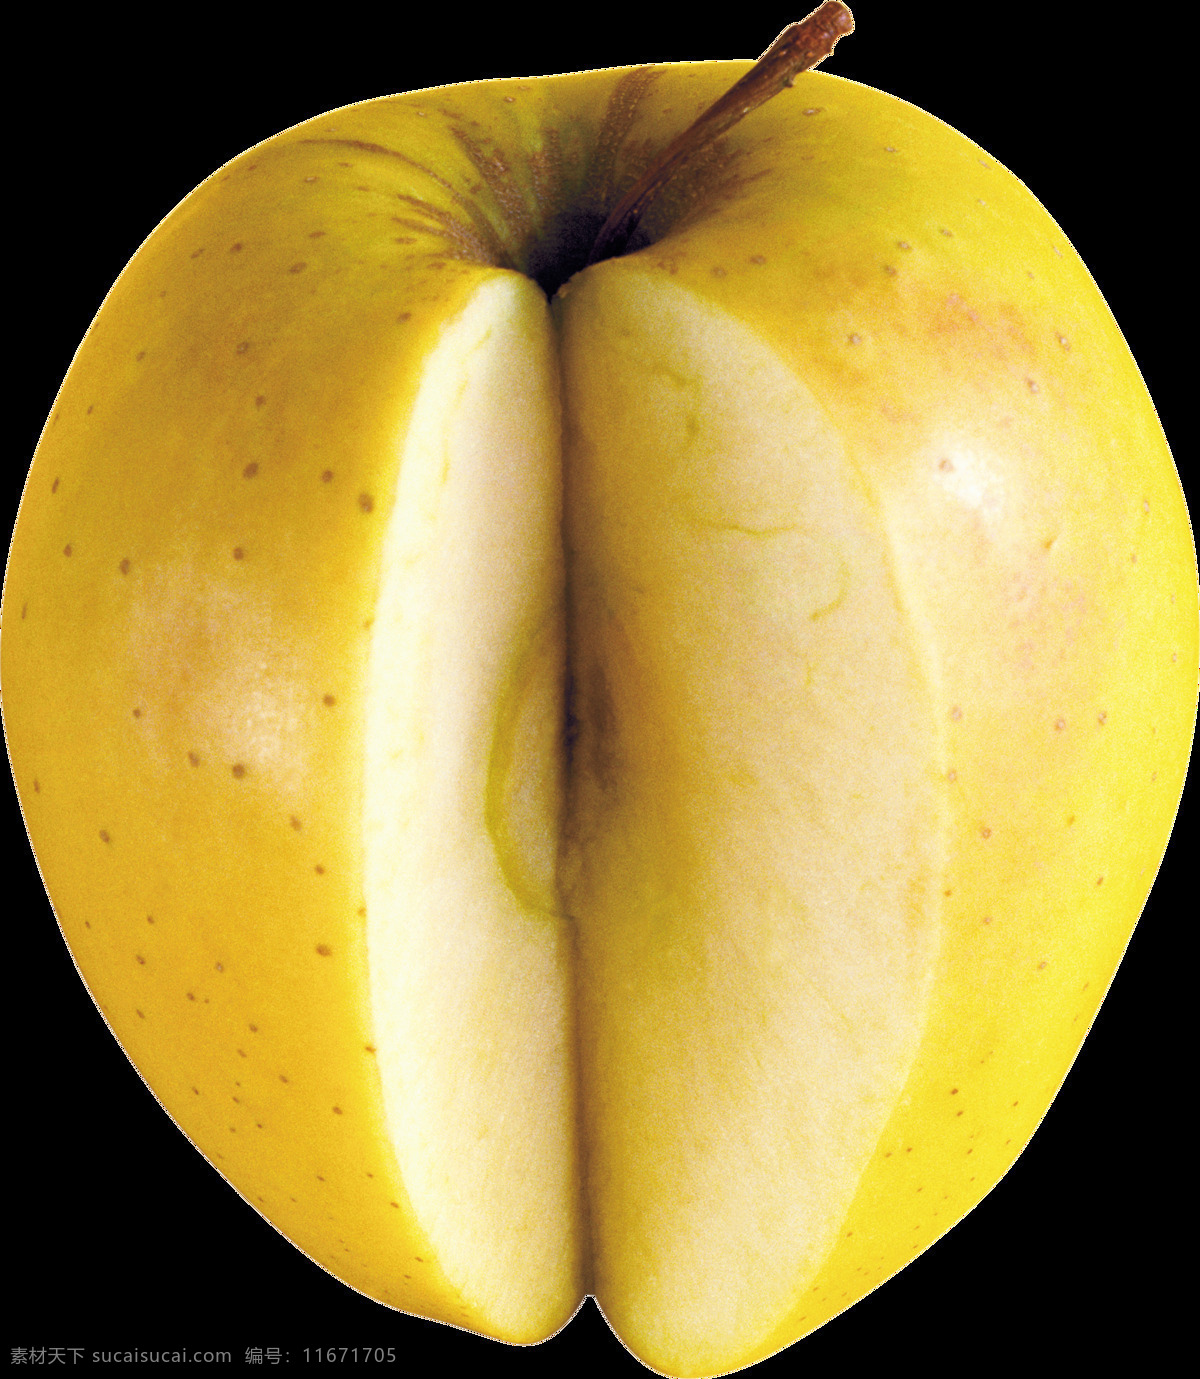 切 一部分 苹果 免 抠 透明 图 层 青苹果 苹果卡通图片 苹果logo 苹果简笔画 壁纸高清 大苹果 红苹果 苹果梨树 苹果商标 金毛苹果 青苹果榨汁